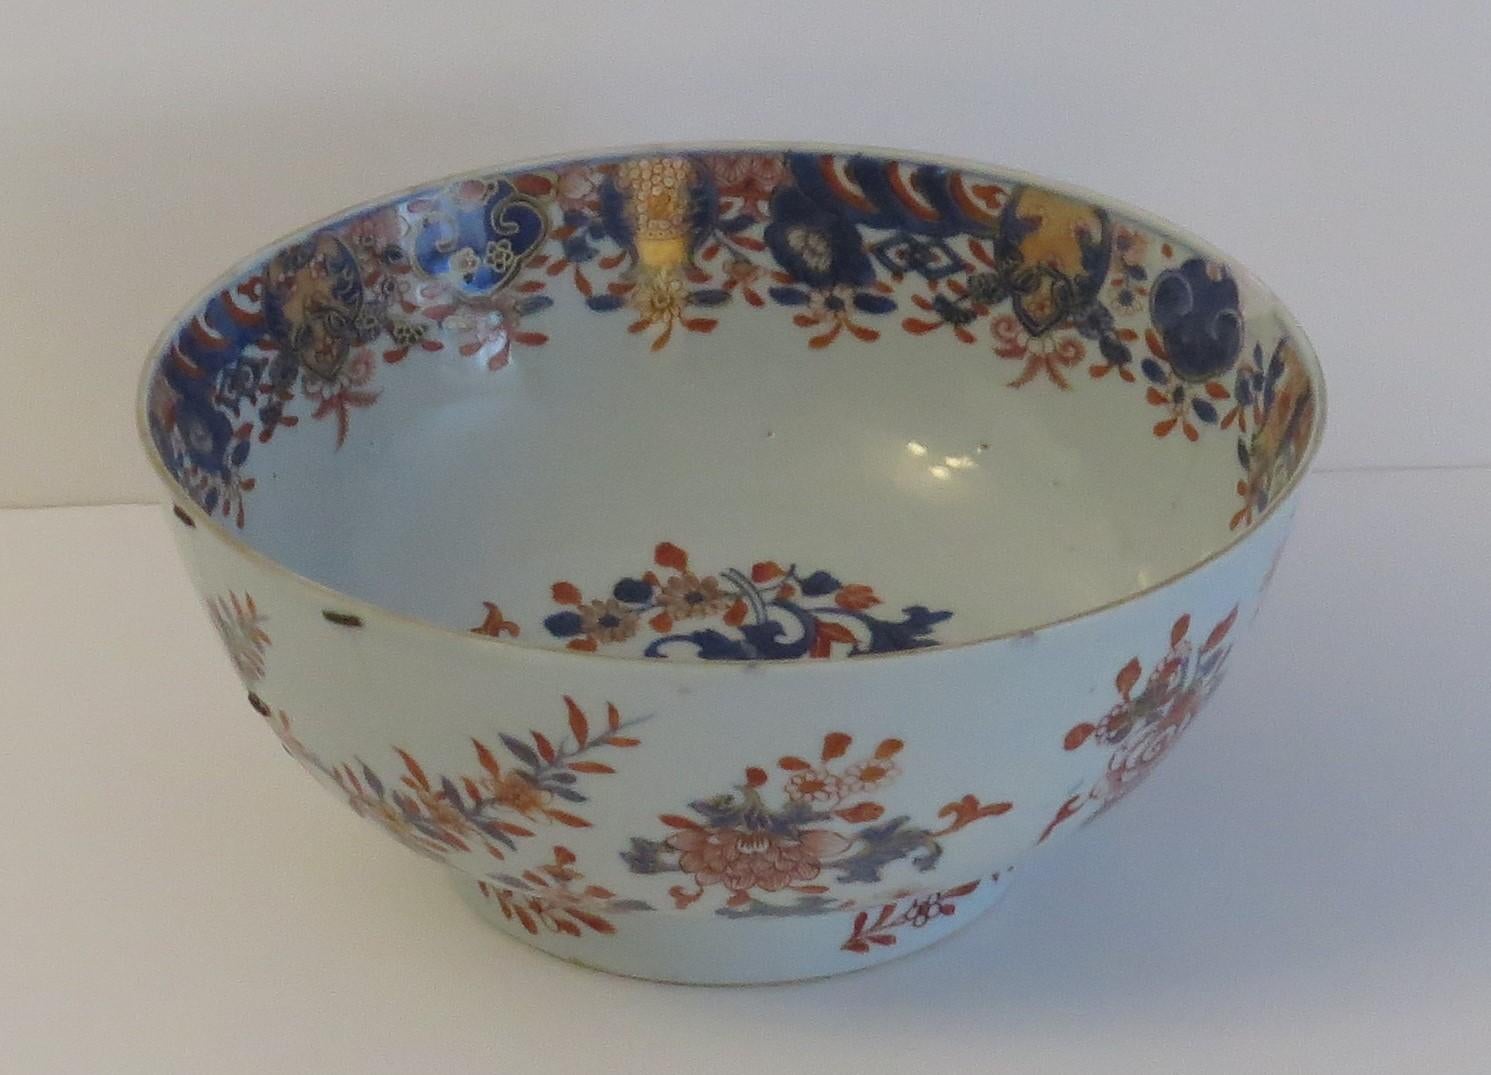 Il s'agit d'un magnifique bol sur pied en porcelaine d'exportation chinoise avec une fine décoration Imari peinte à la main, que nous datons du tournant du 17e au 18e siècle, vers 1710, période Qing, règne de Kangxi (1662 - 1722). 

Ce bol est bien